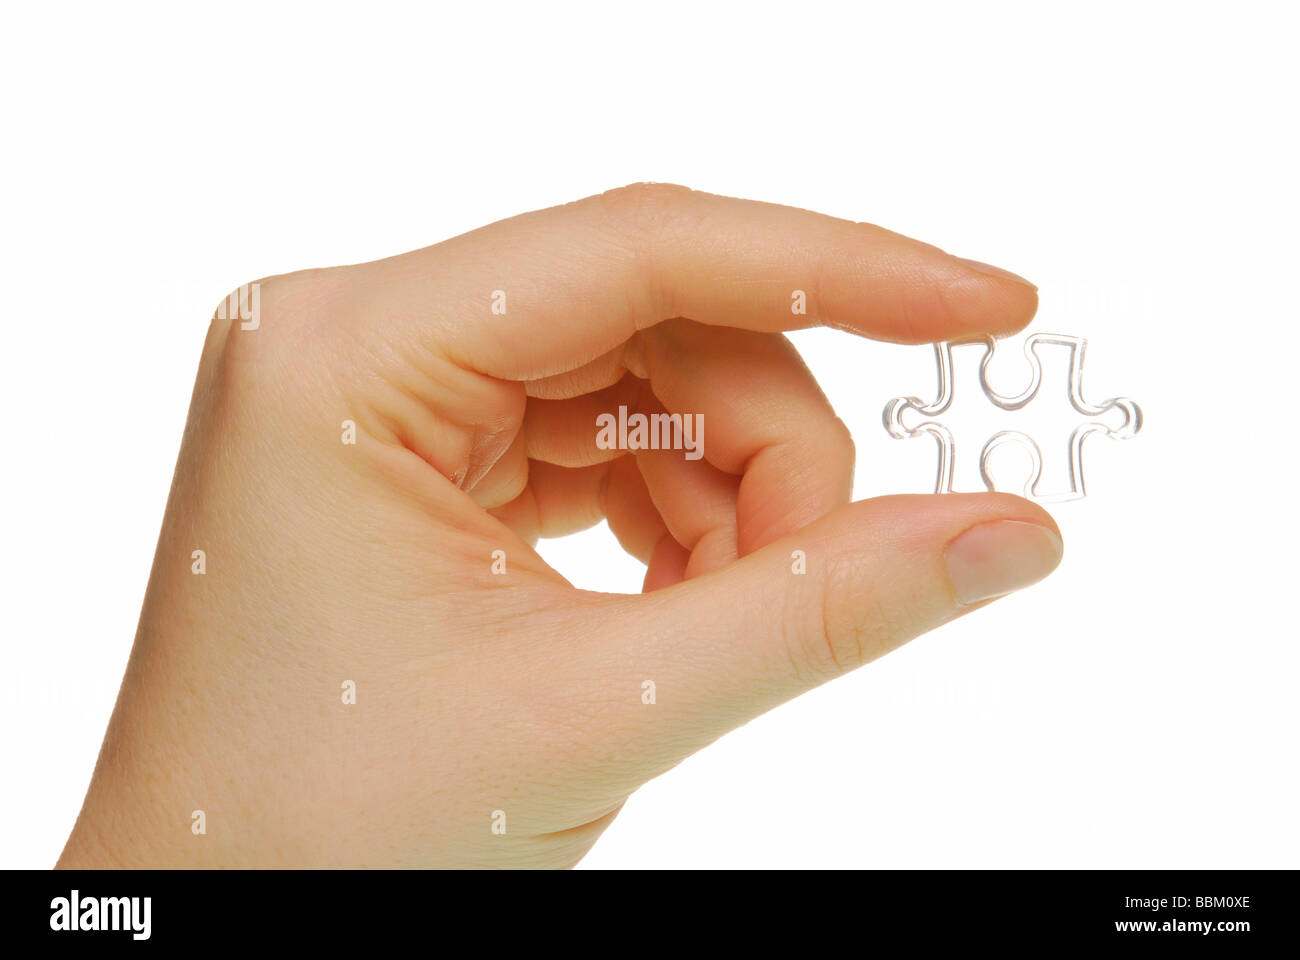 La main féminine avec jigsaw piece, symbolique de la pièce du puzzle Banque D'Images